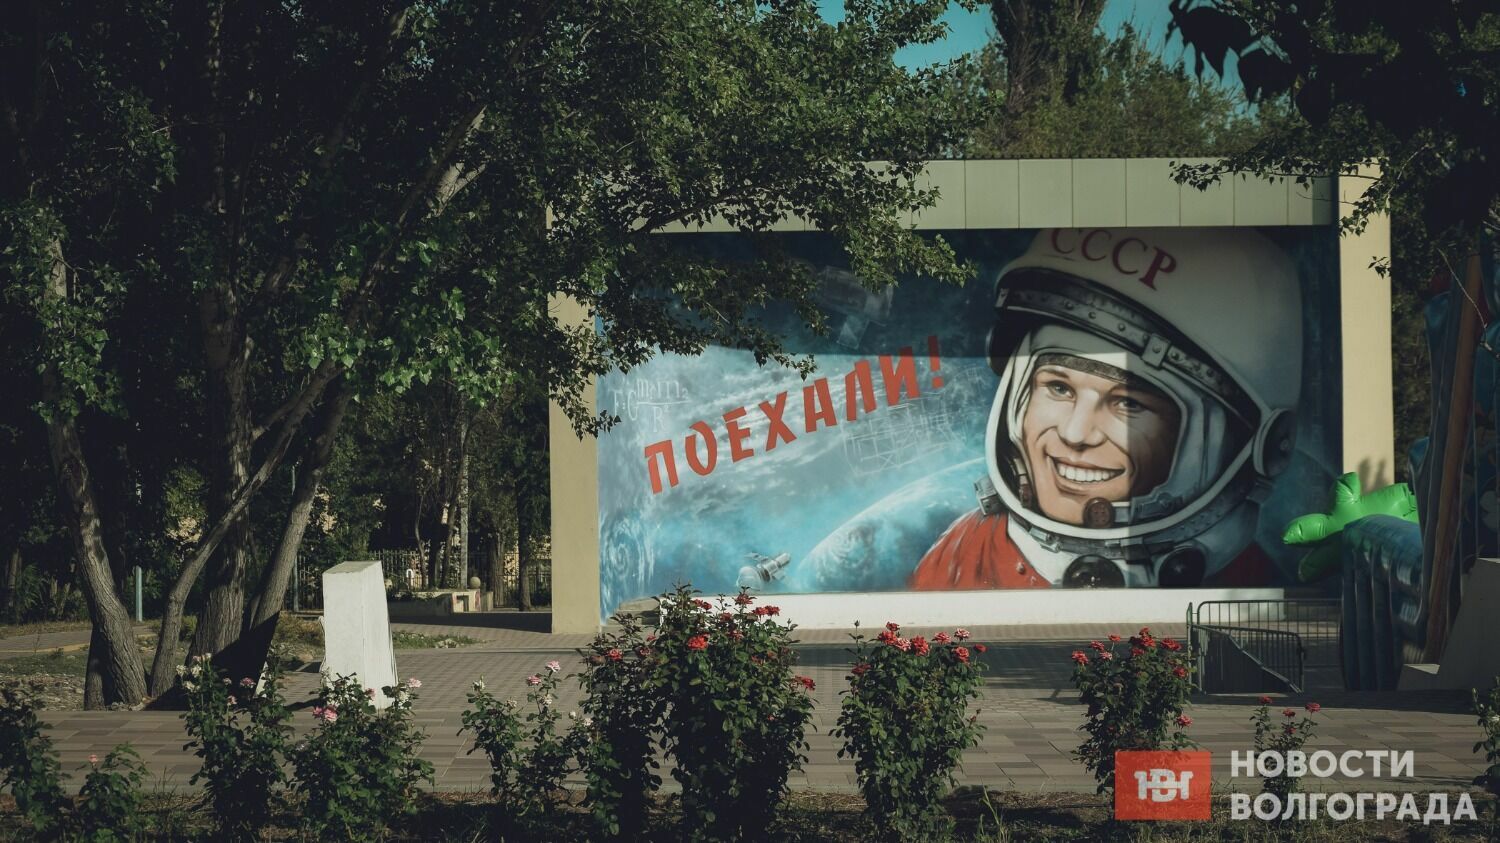 Несколько лет назад в Краснооктябрьском районе привели в порядок парк имени Гагарина